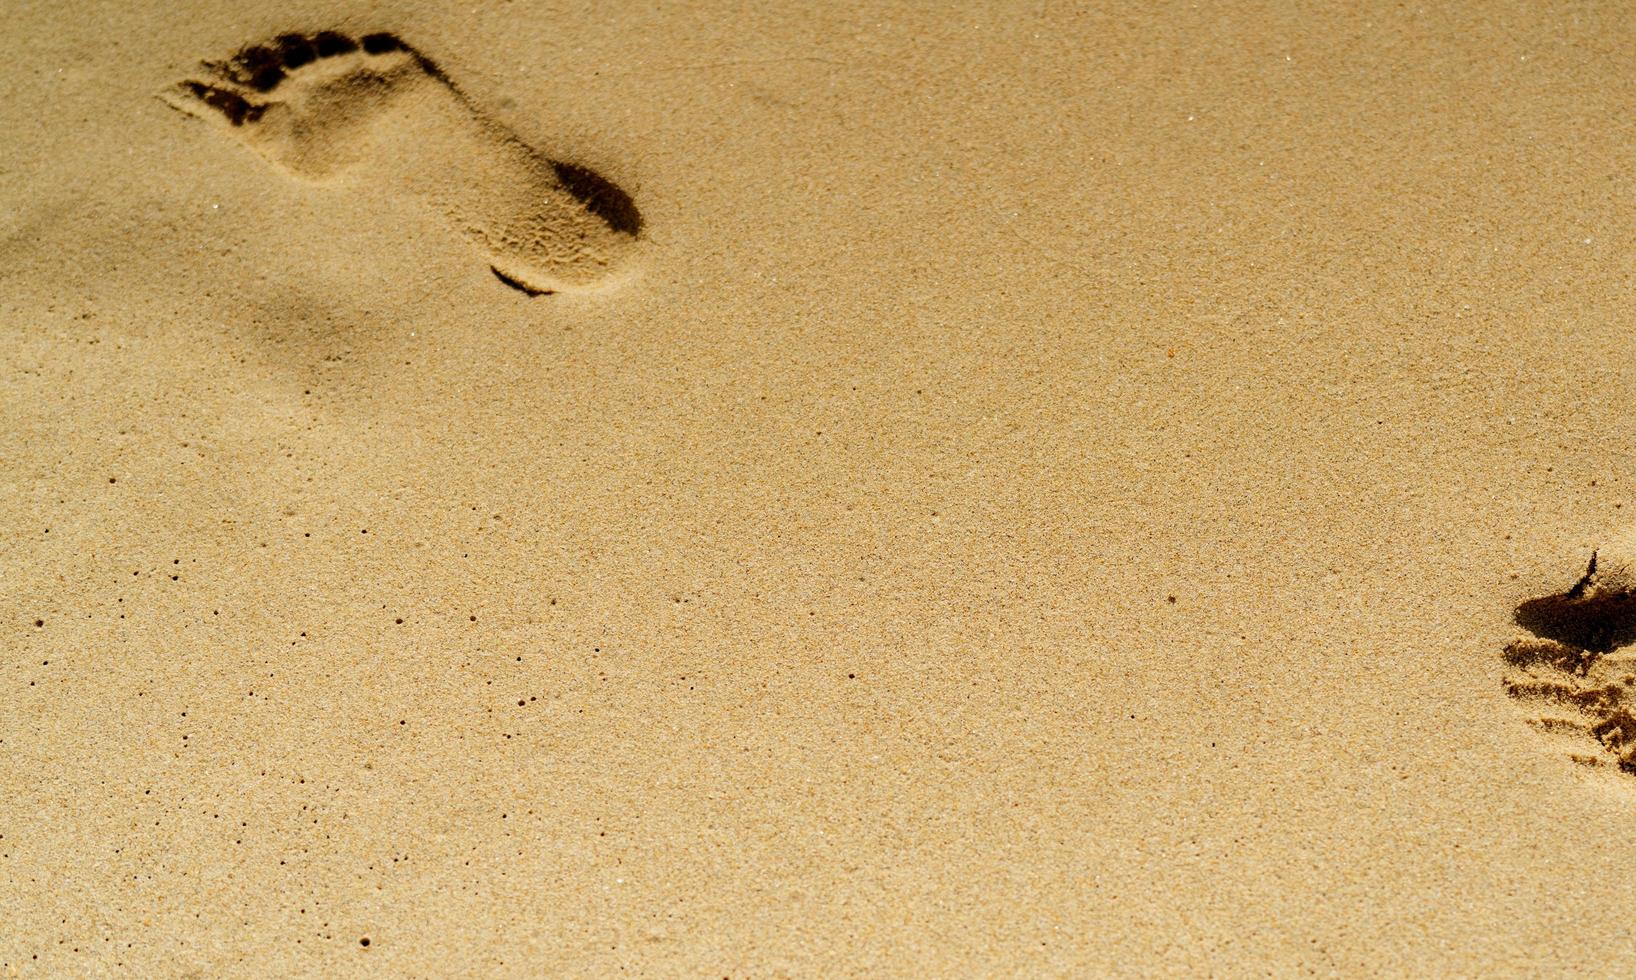 voetafdruk in het zand. voetafdruk in zand op het strand in de zomer. zandstrand achtergrond. zomervakantie op tropisch paradijs strand concept. menselijke voetstapstempel in zand. ontspannen en natuurlijke voetspa foto